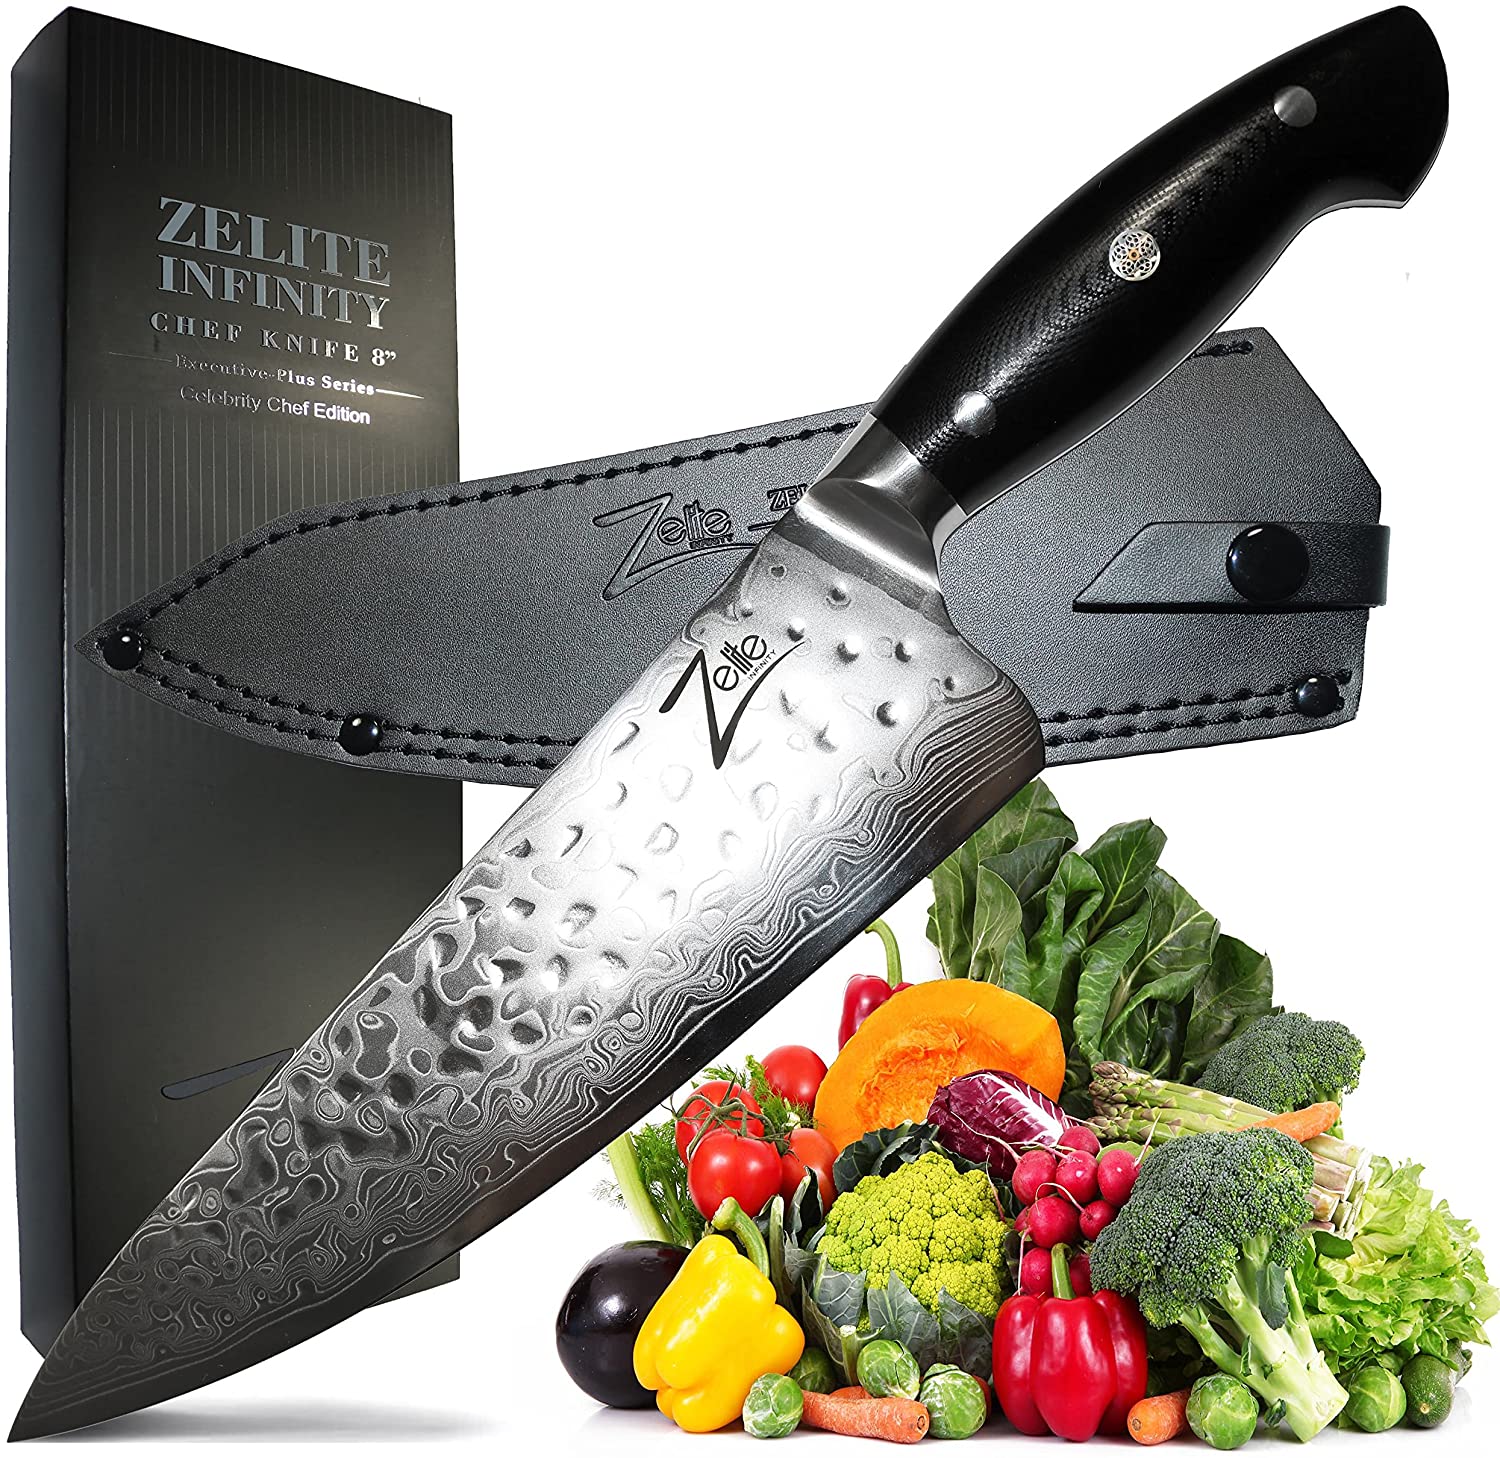 Cyllell Japaneaidd orau ar gyfer boning- Zelite Honesuki Infinity Chef Knife 8